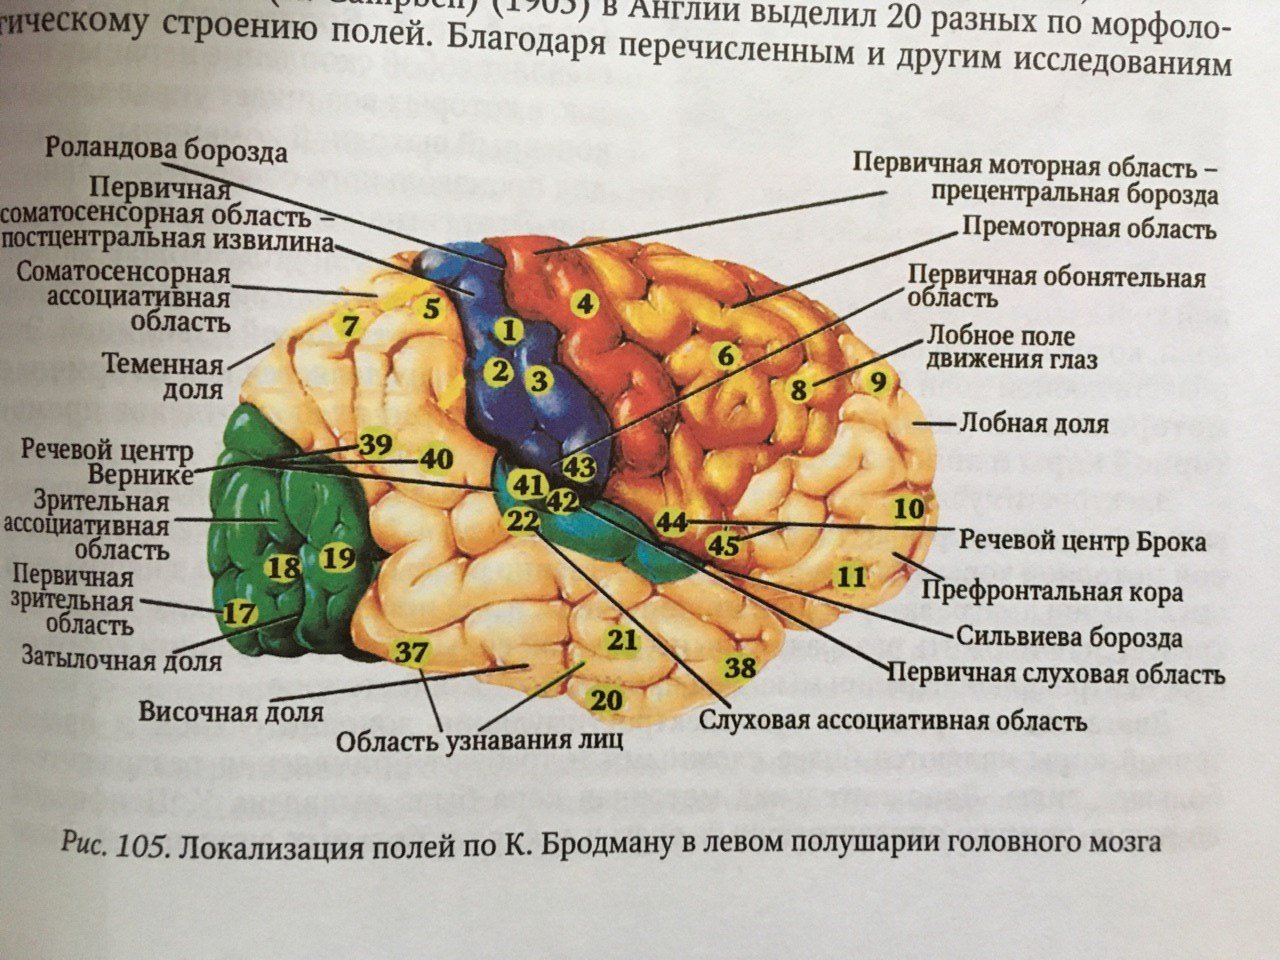 Лобно теменная область мозга. Сильвиева борозда мозга. Головной мозг борозды роландова. Доли борозды и извилины мозга. Борозды доли извилины коры головного мозга.